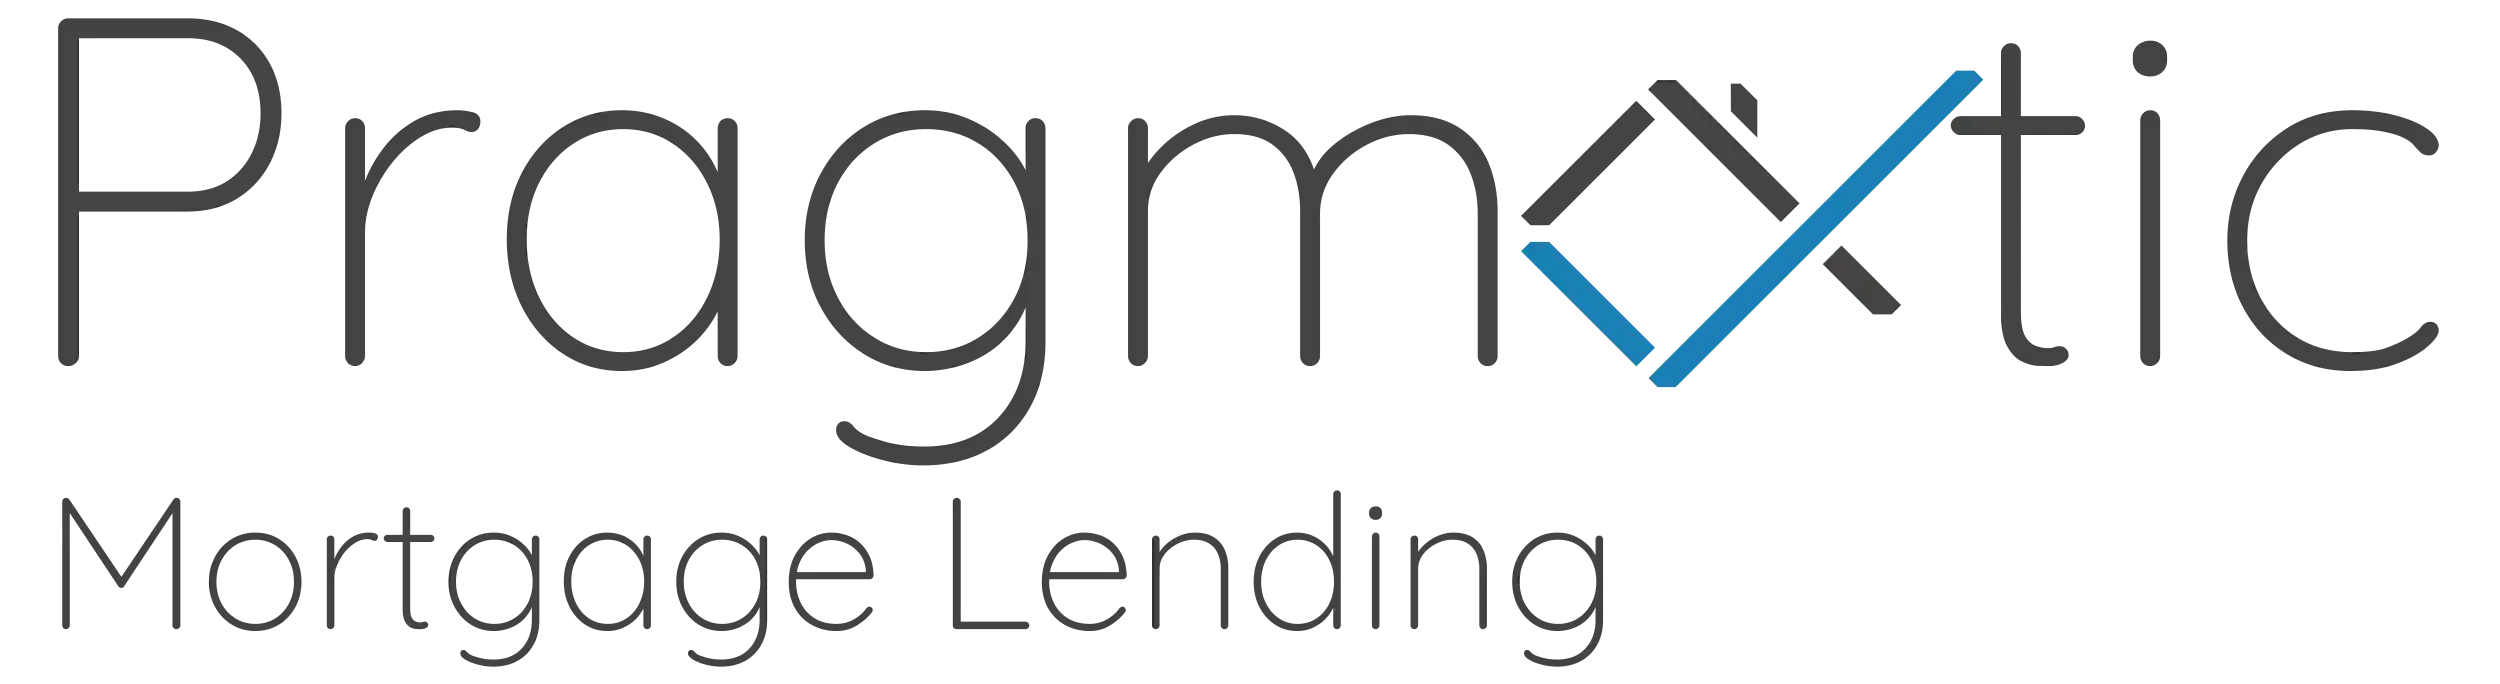 Pragmatic Mortgage Lending Logo